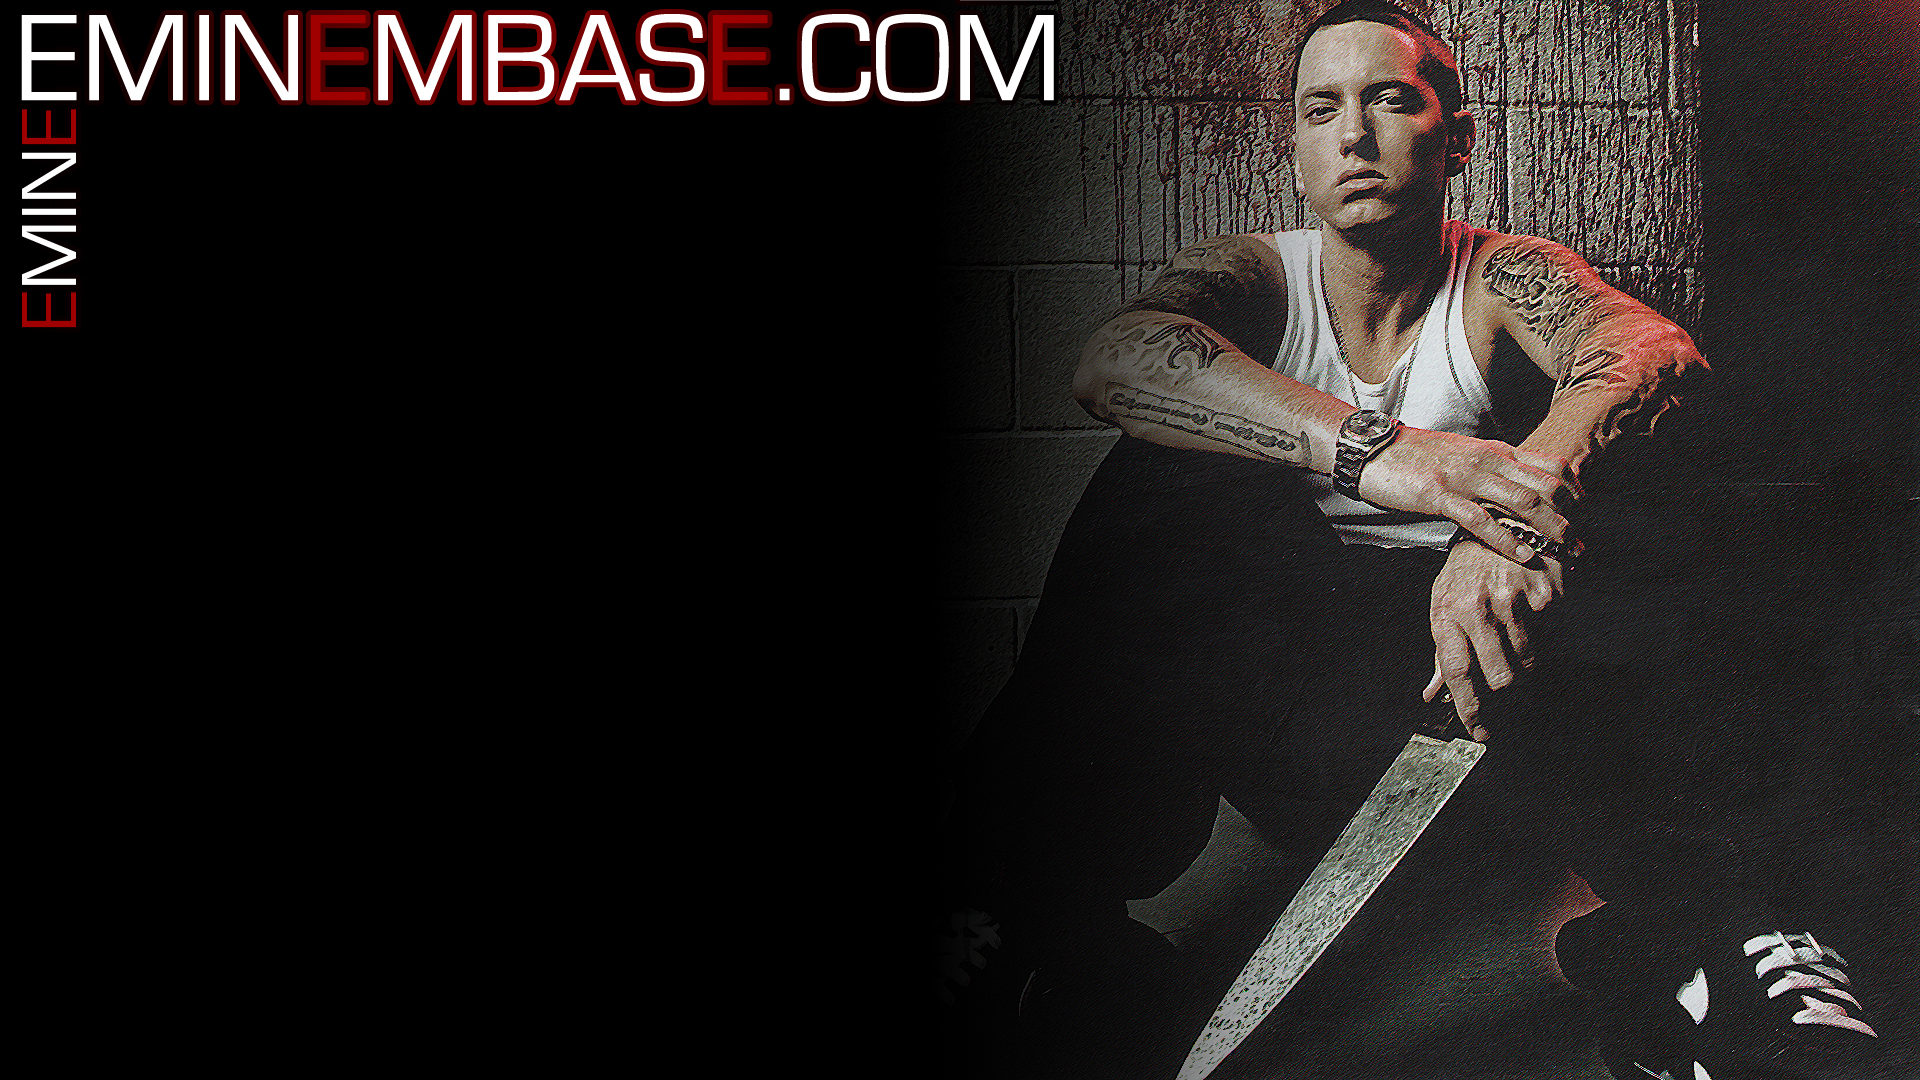 Eminem Desktop Wallpaper For